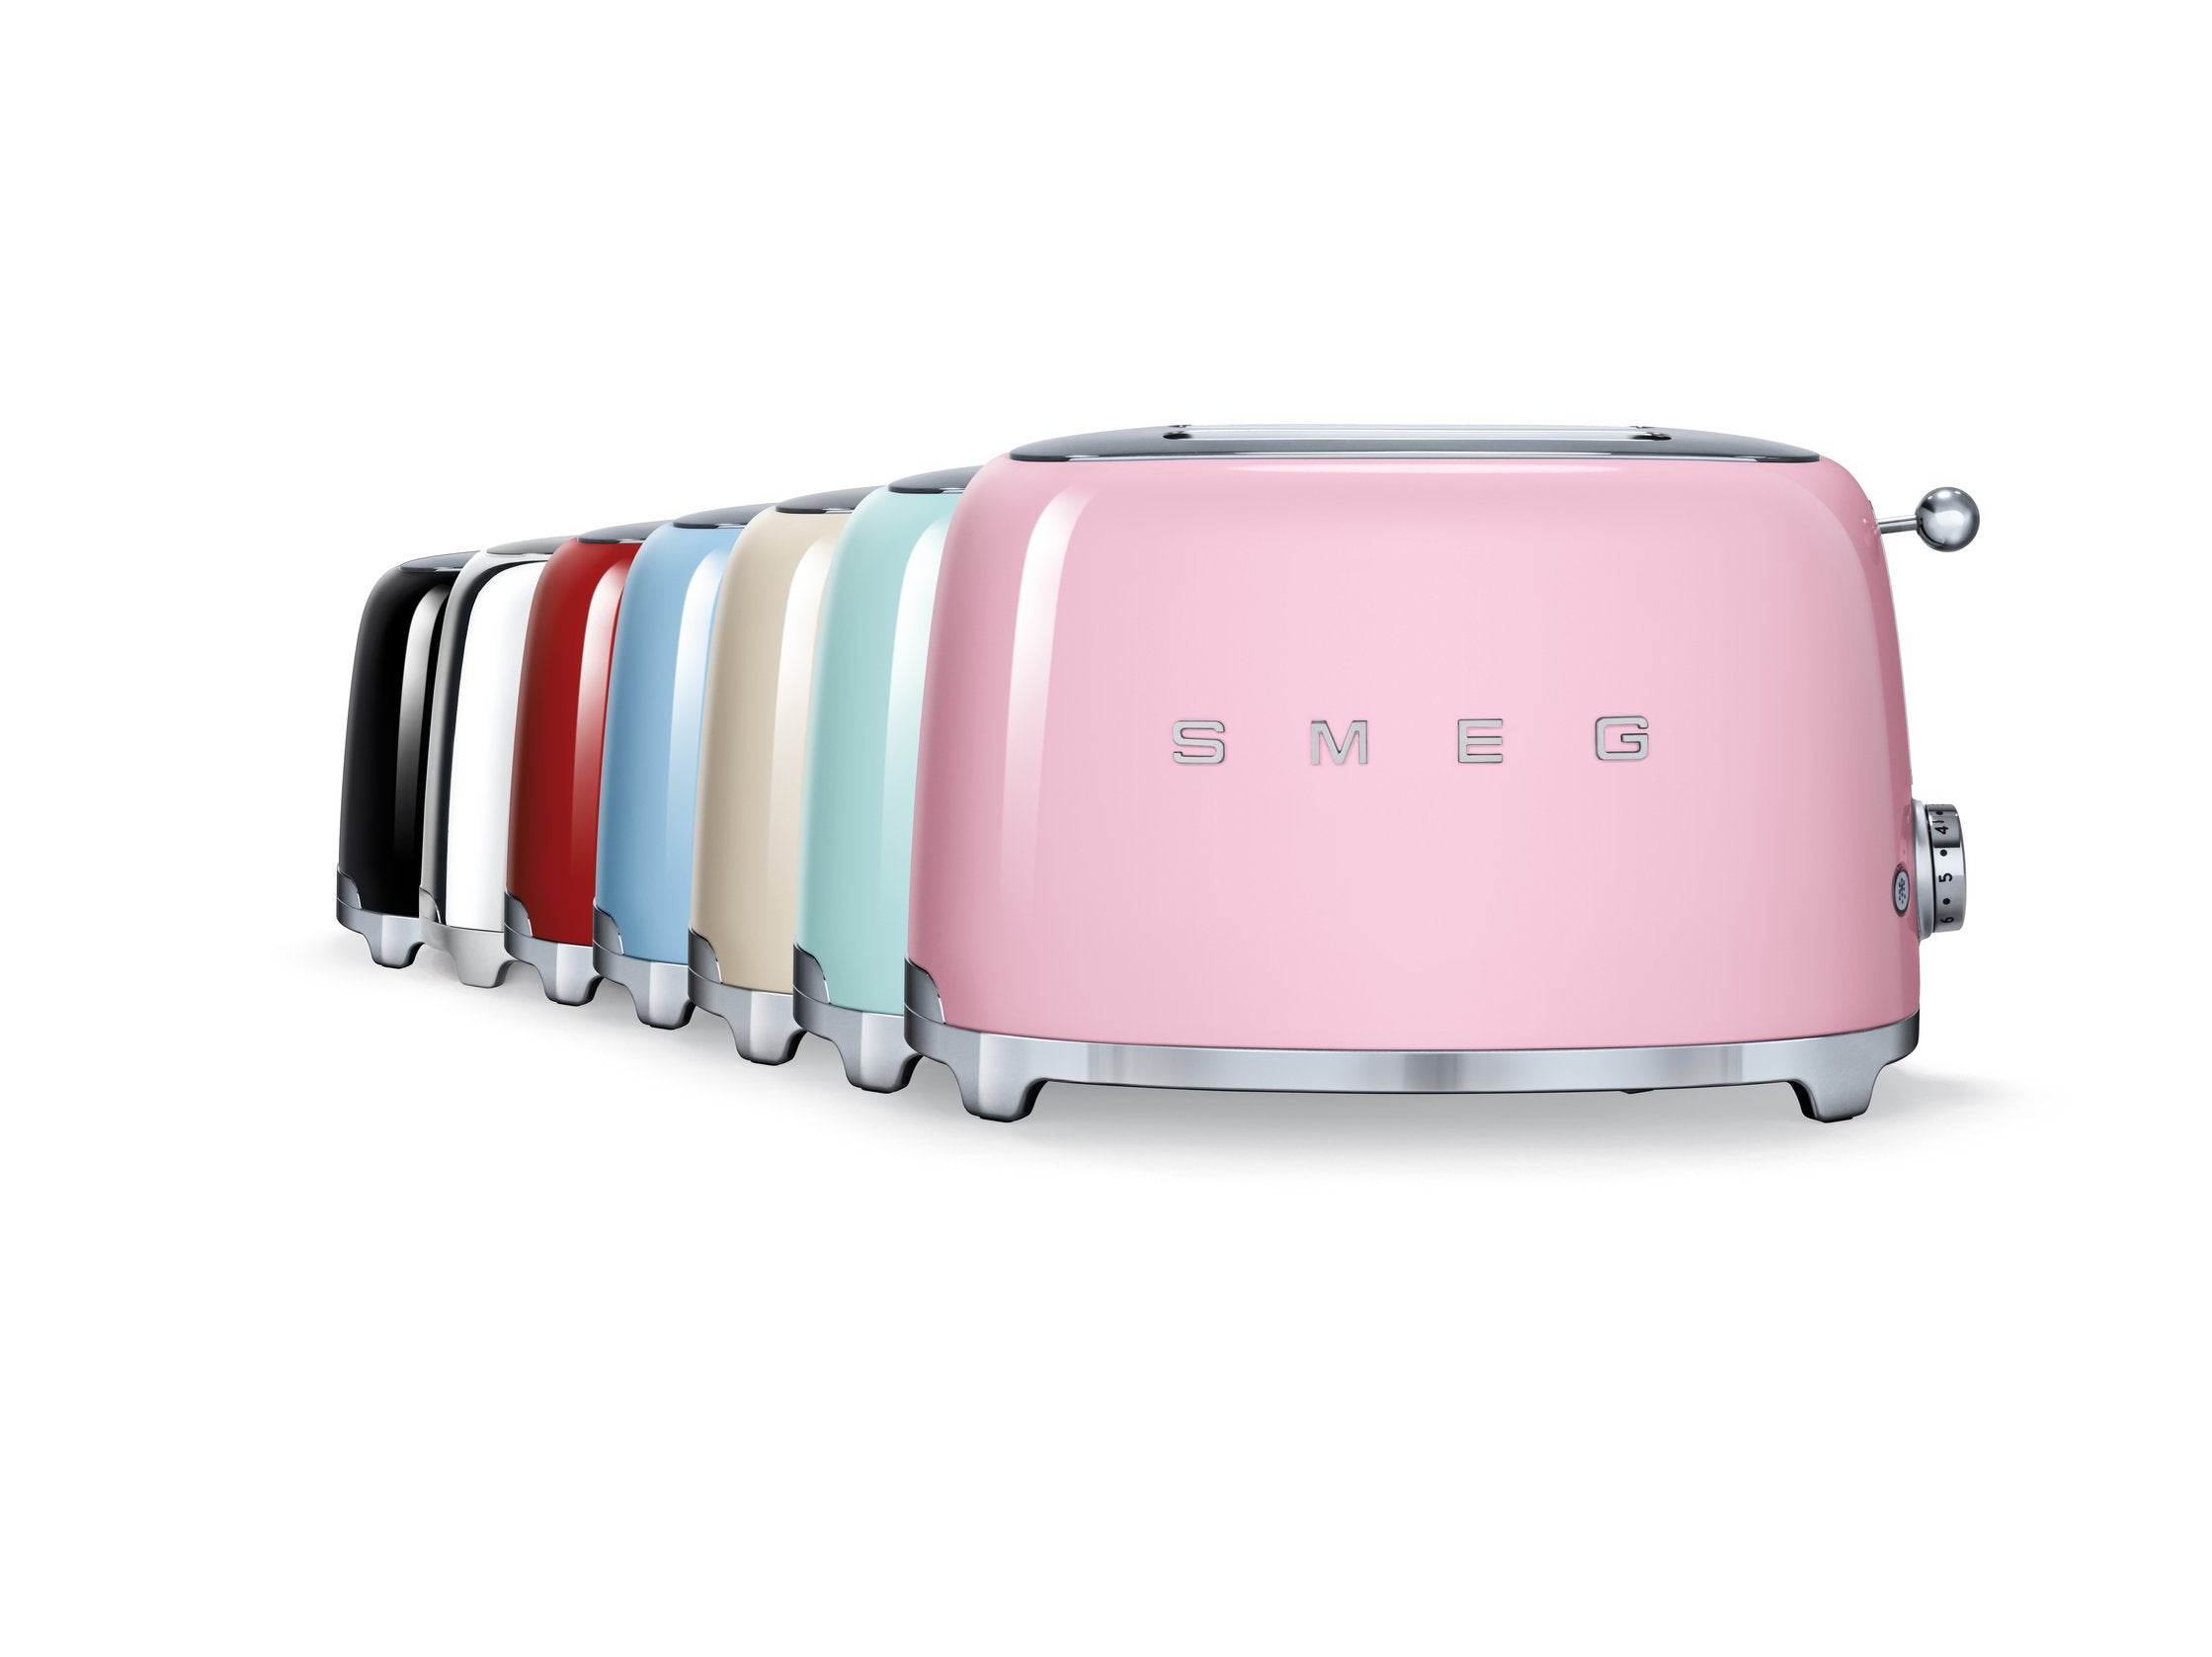 Smeg 50's Style Toaster